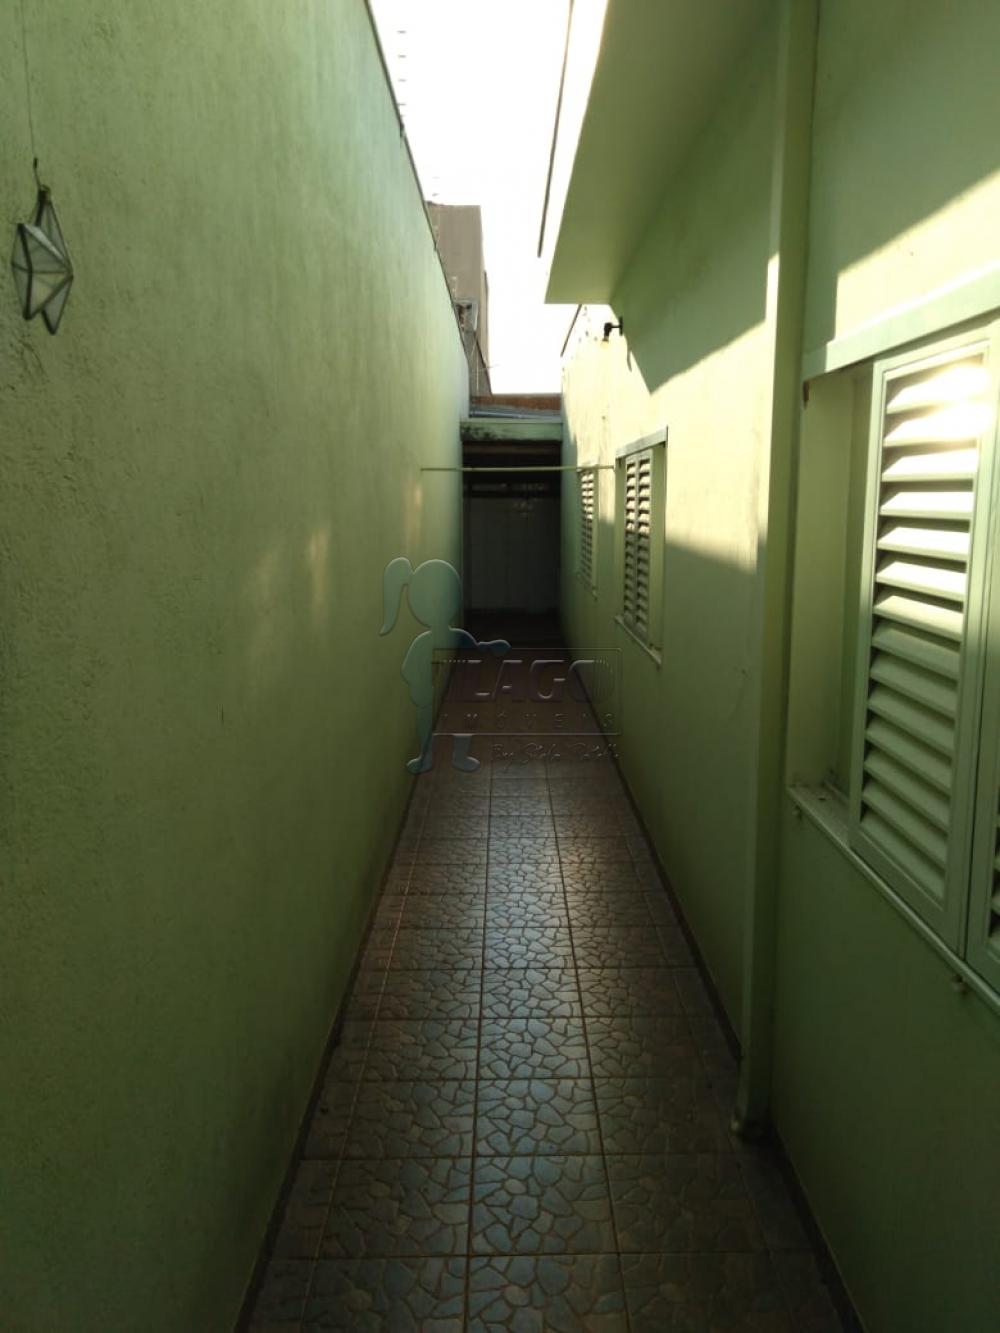 Comprar Casas / Padrão em Ribeirão Preto R$ 410.000,00 - Foto 21